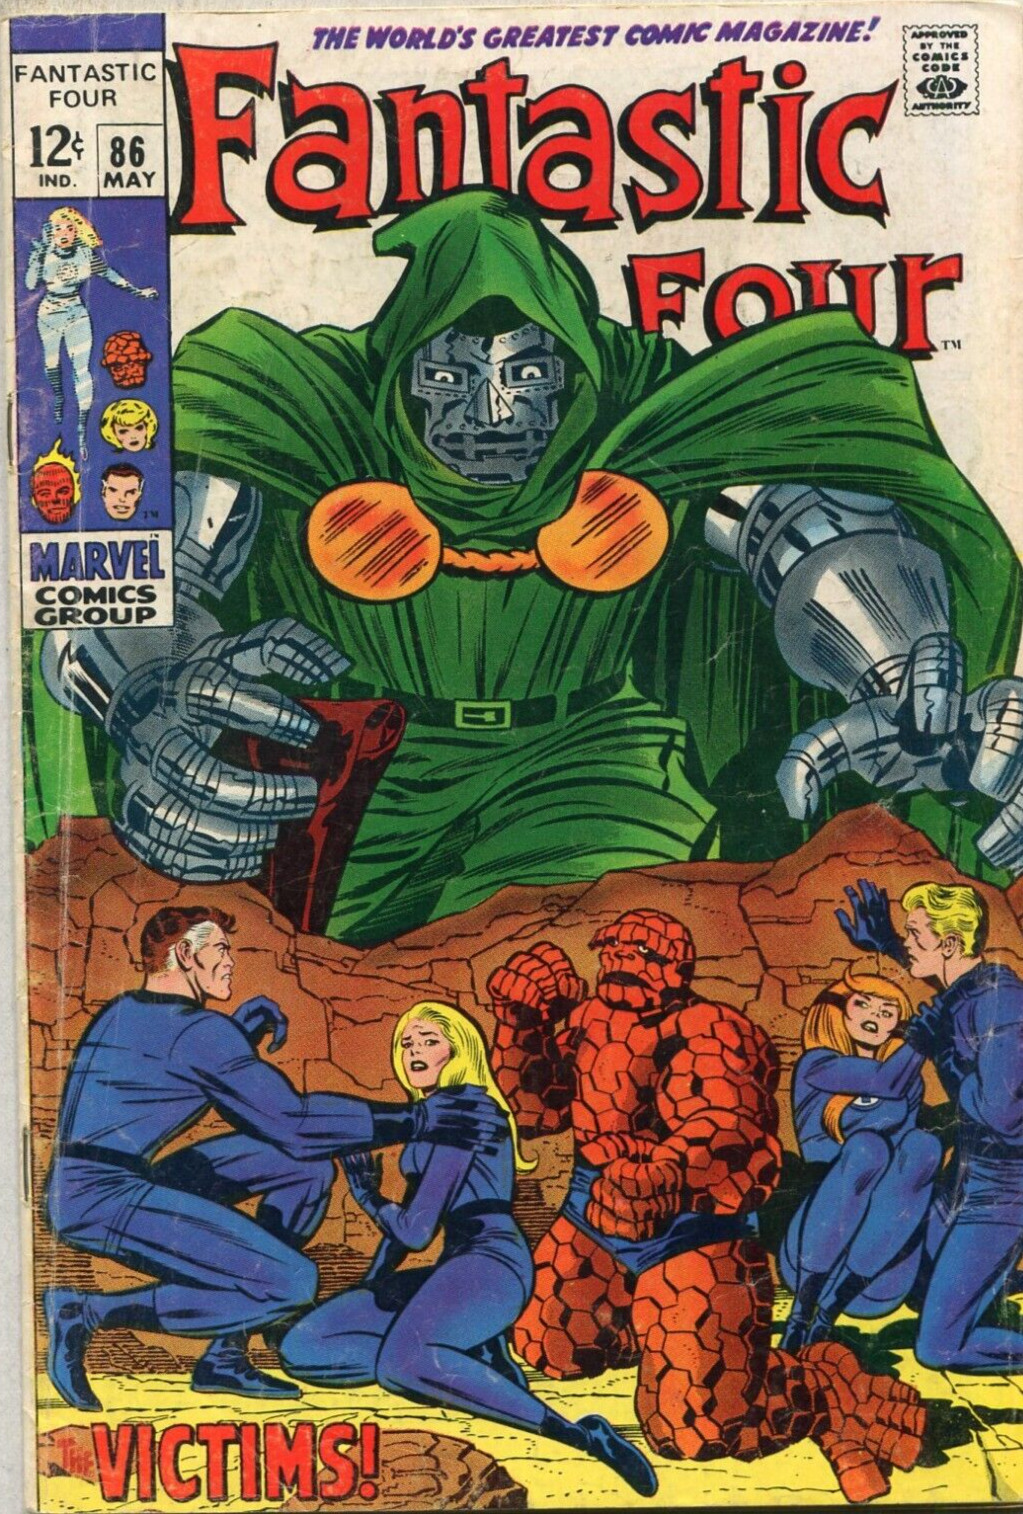 Fantastic Four #86 VG  Victims  Marvel Comics  SA